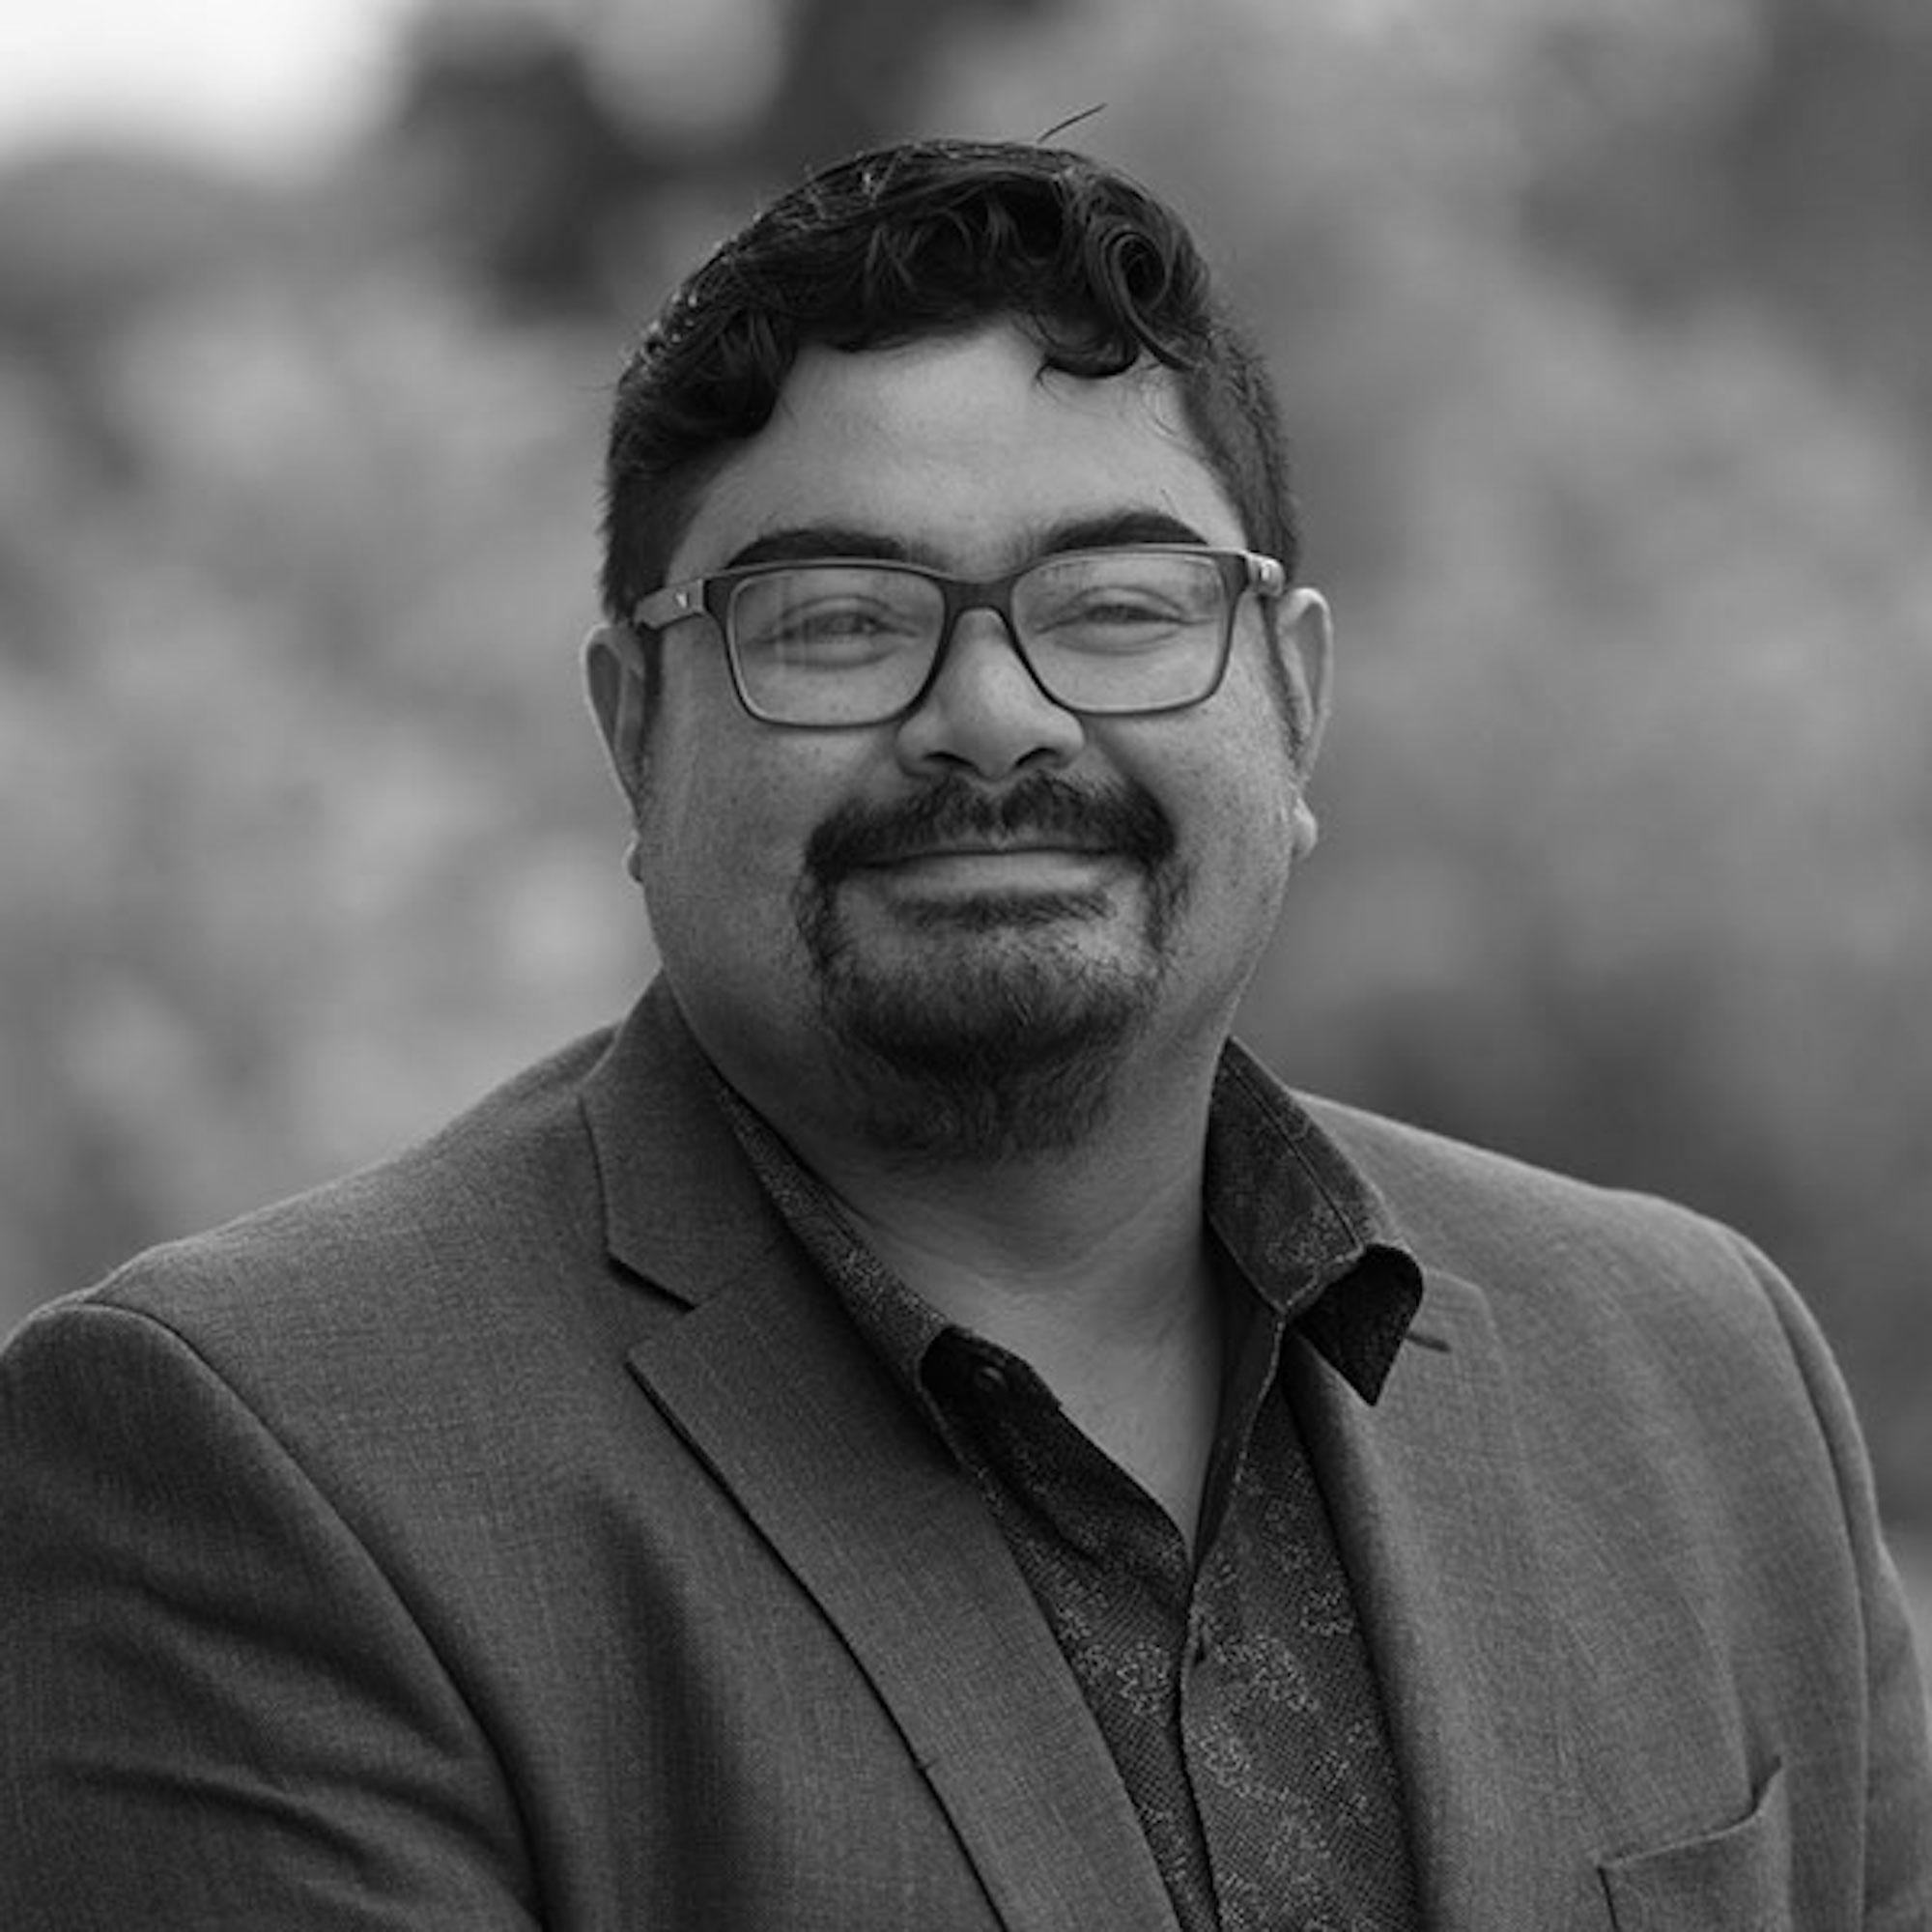 Ricardo J. Valencia es profesor asistente de comunicación de la Universidad Estatal de California, Fullerton. Twitter: @ricardovalp